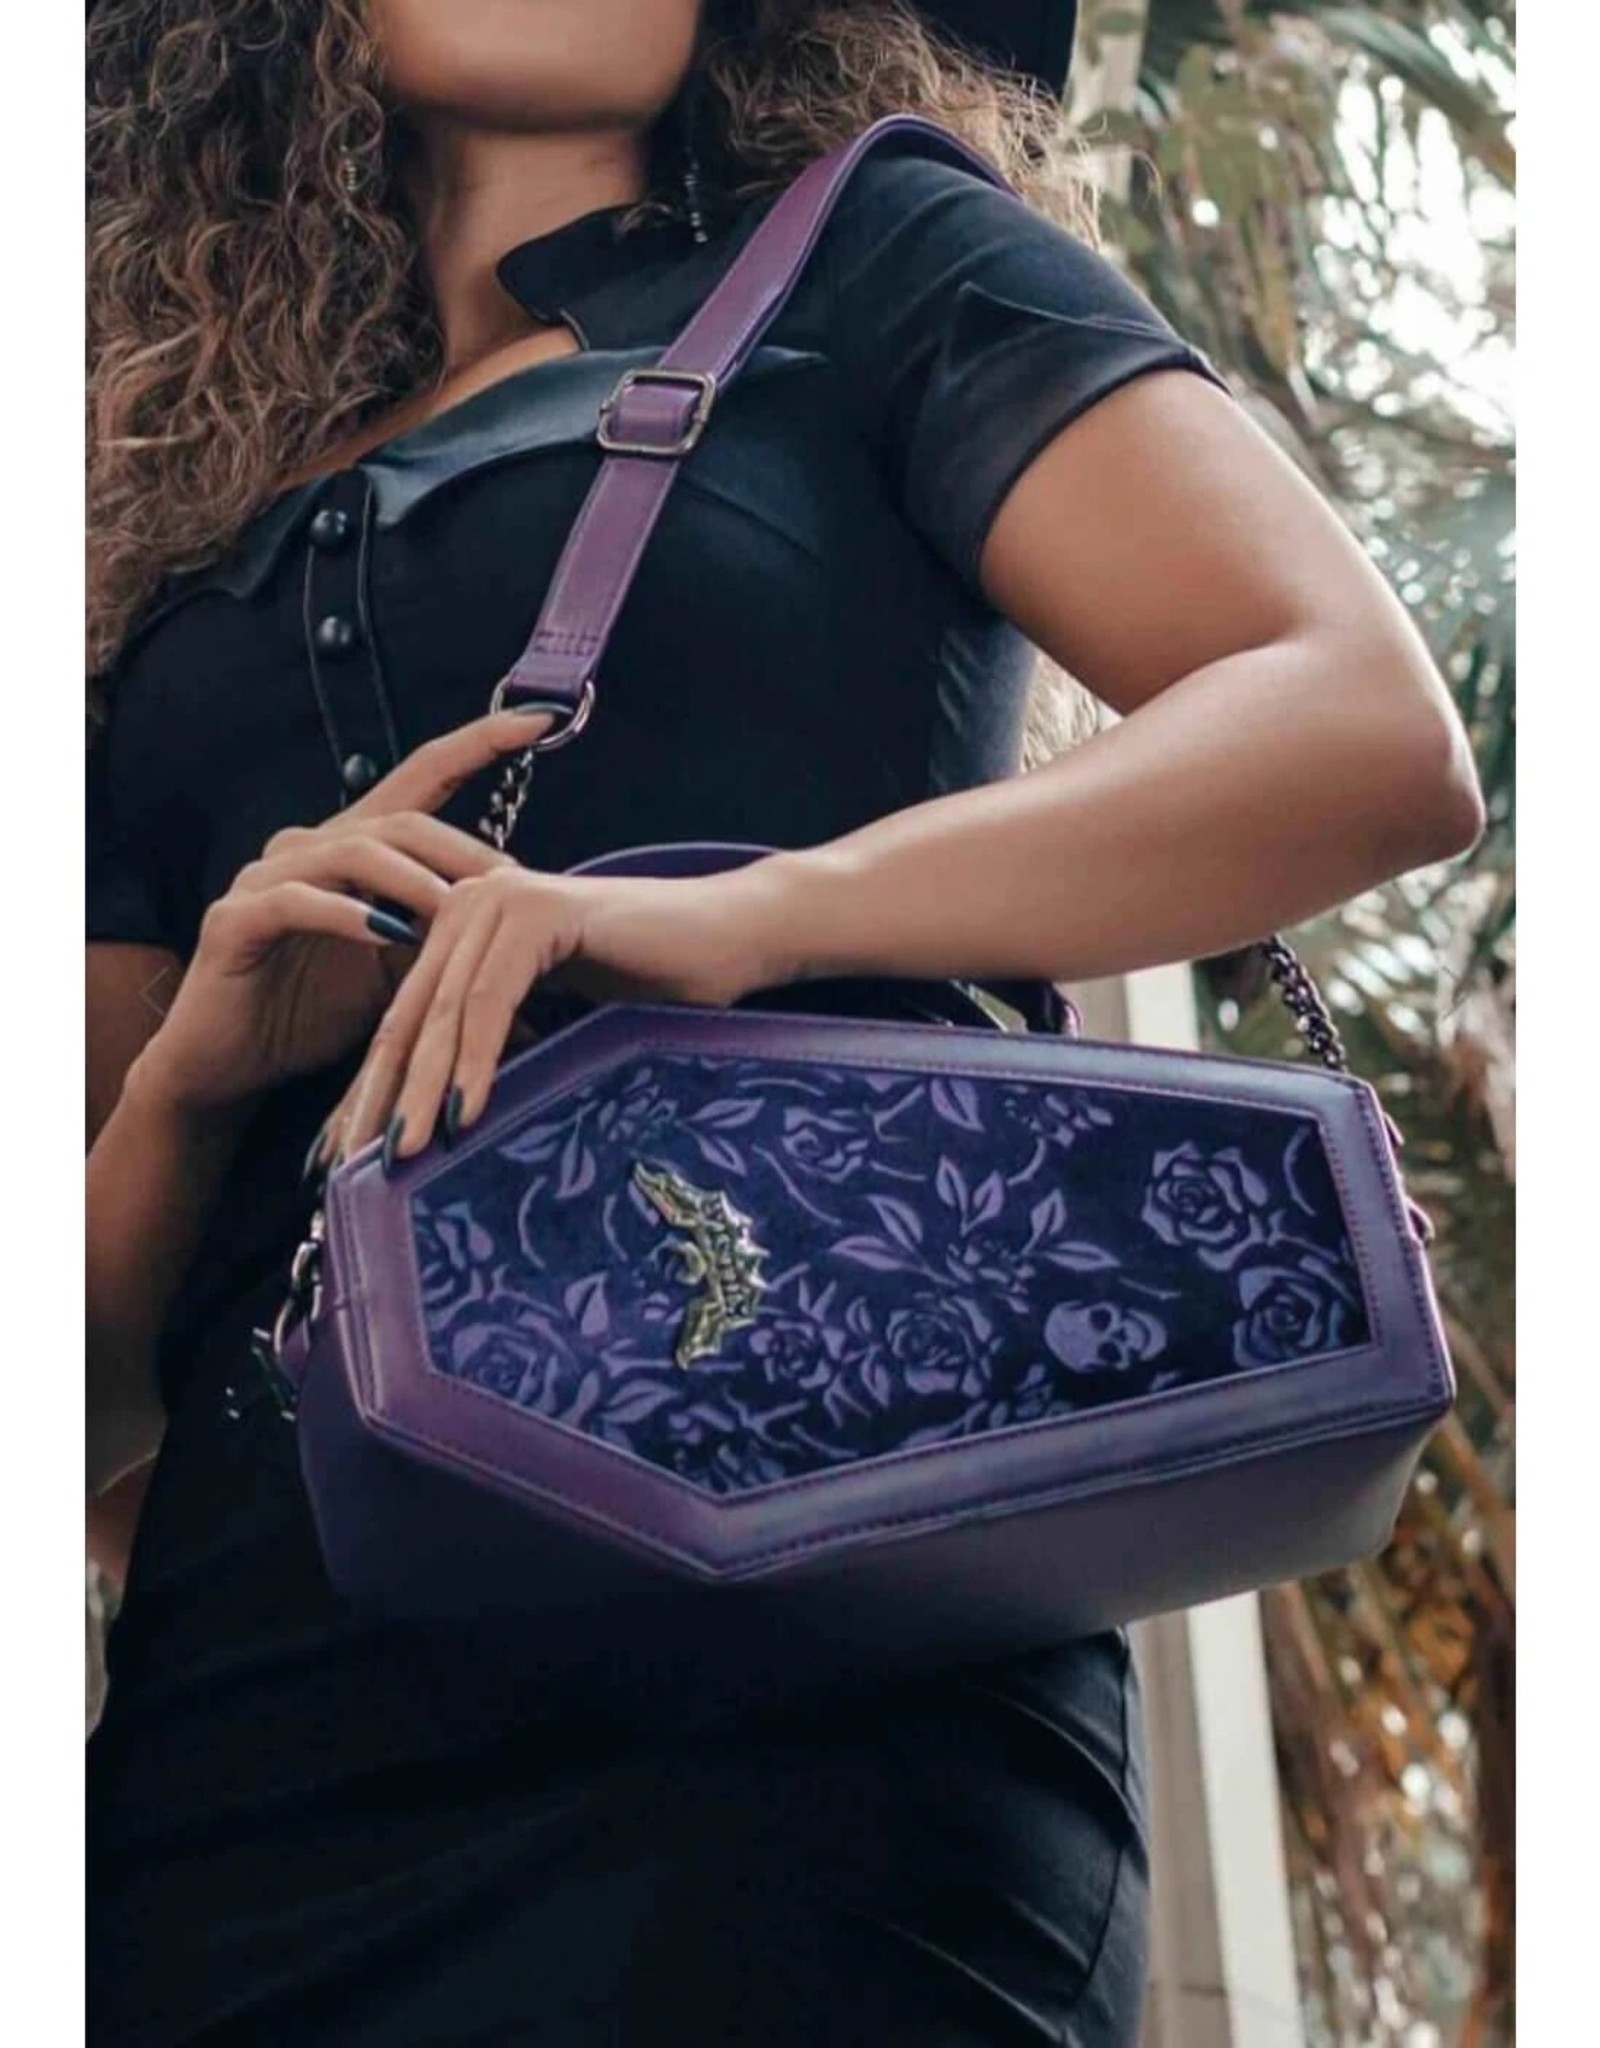 Killstar Killstar bags and accessories - Killstar Vampire's Kiss coffin handbag (plum)